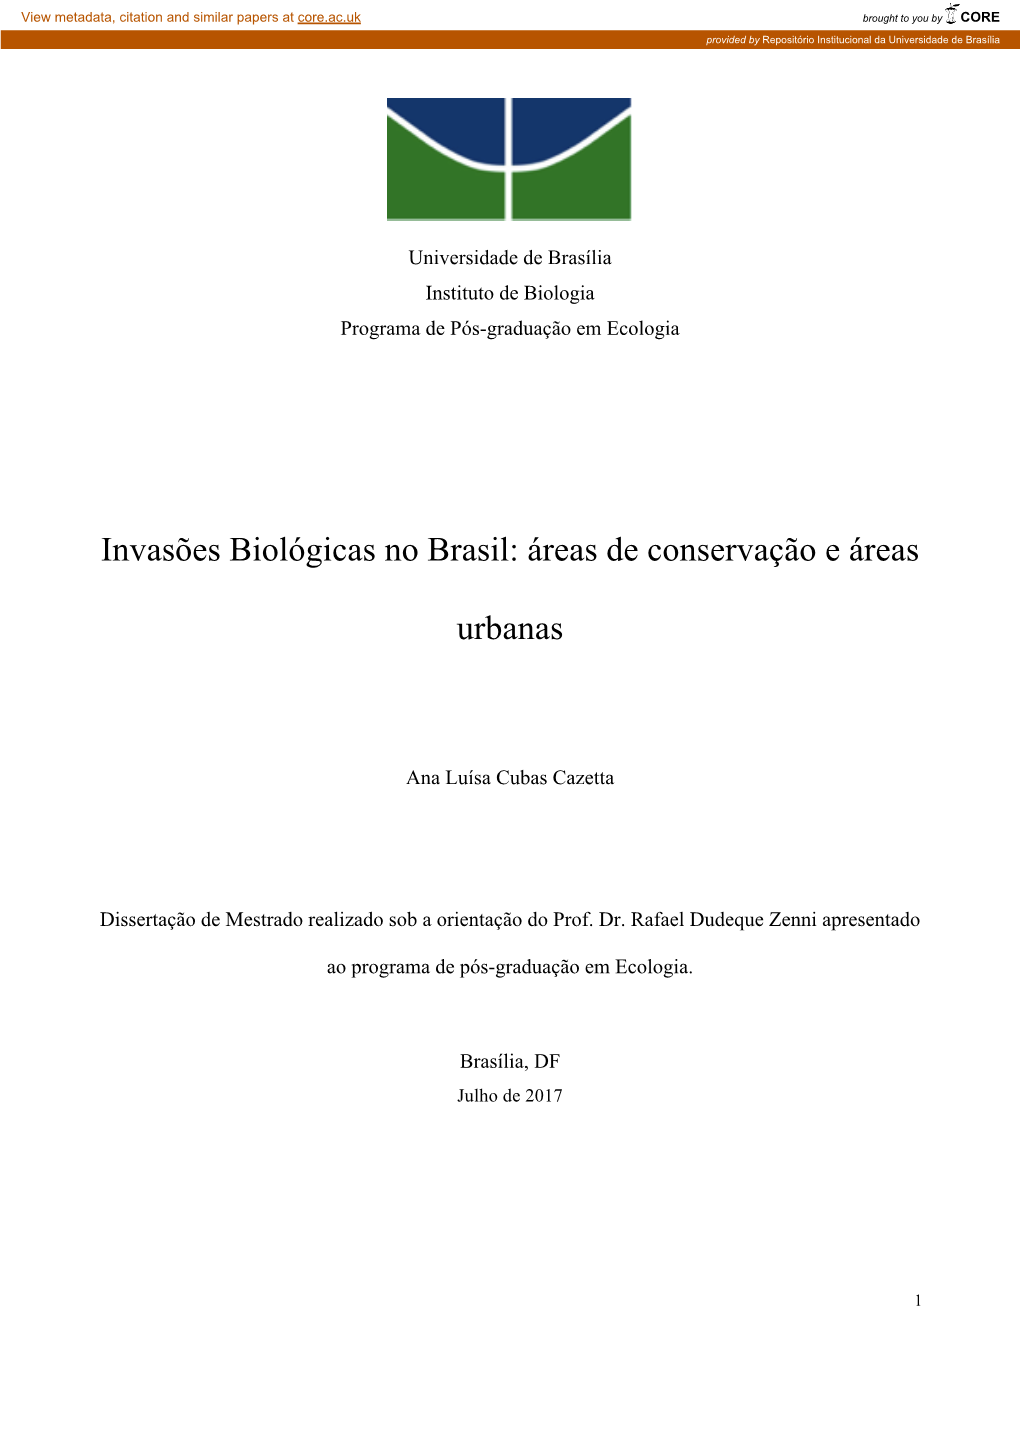 Invasões Biológicas No Brasil: Áreas De Conservação E Áreas